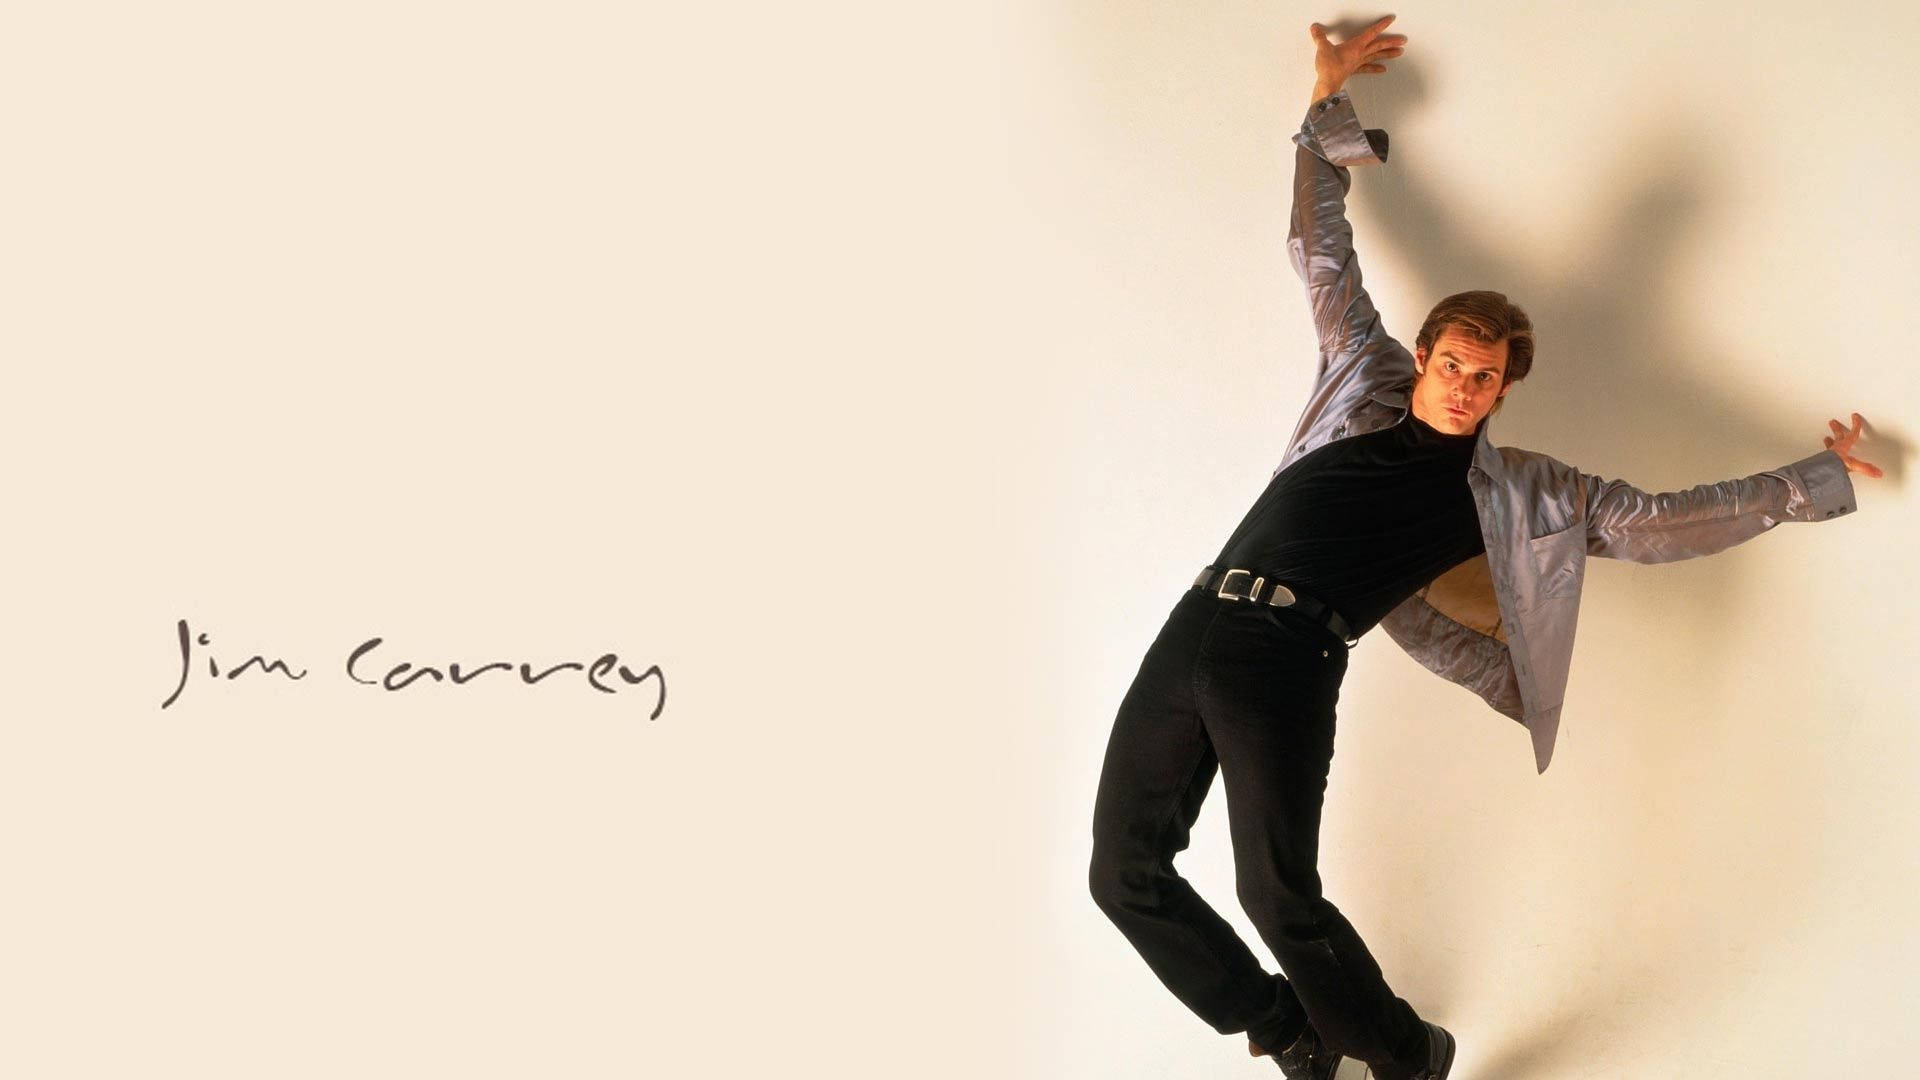 Jim Carrey Ridiculous Pose Background